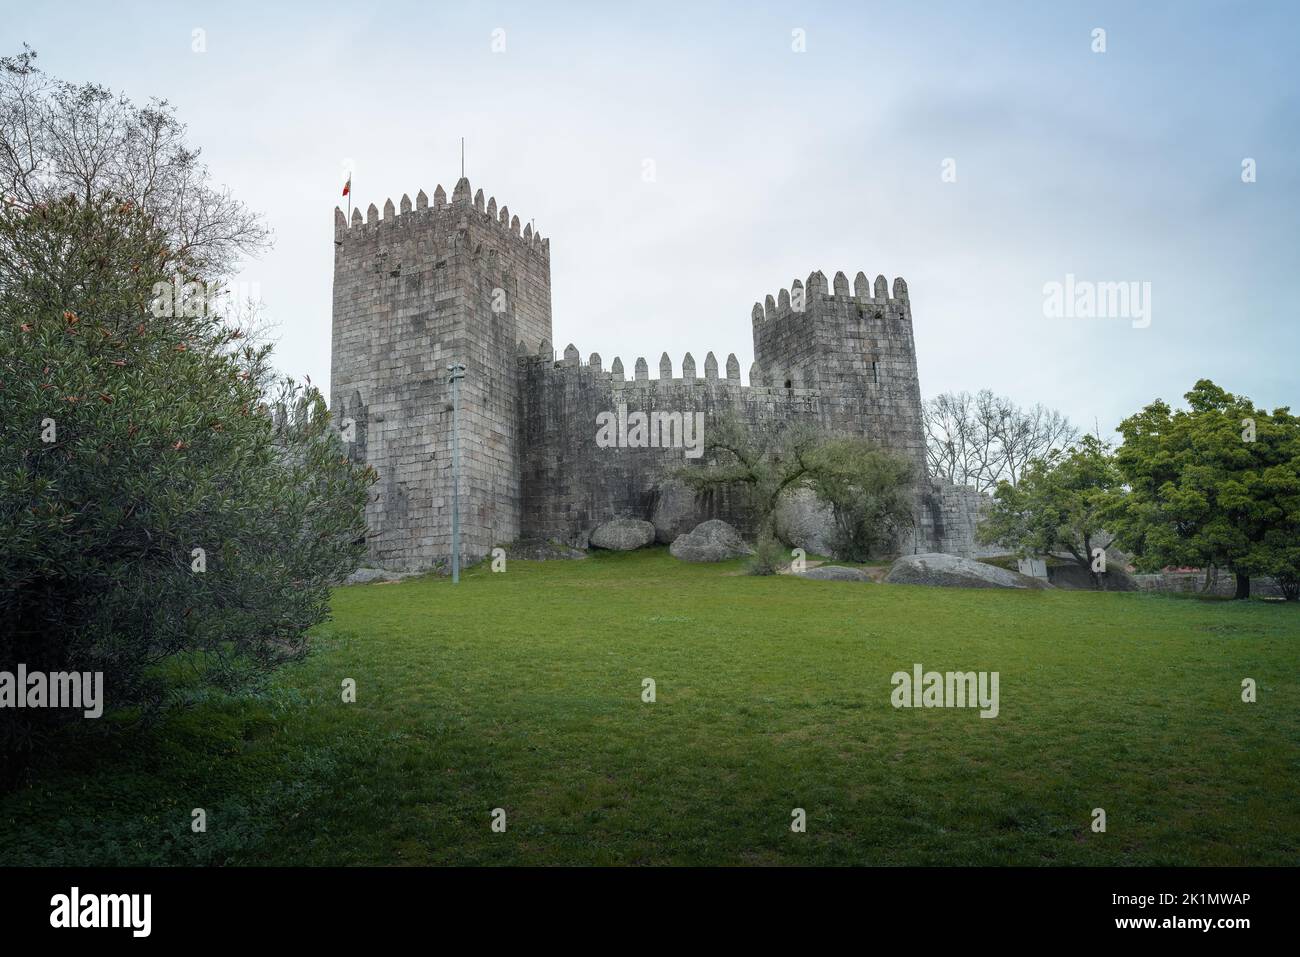 Castle of Guimaraes - Guimaraes, Portugal Stock Photo